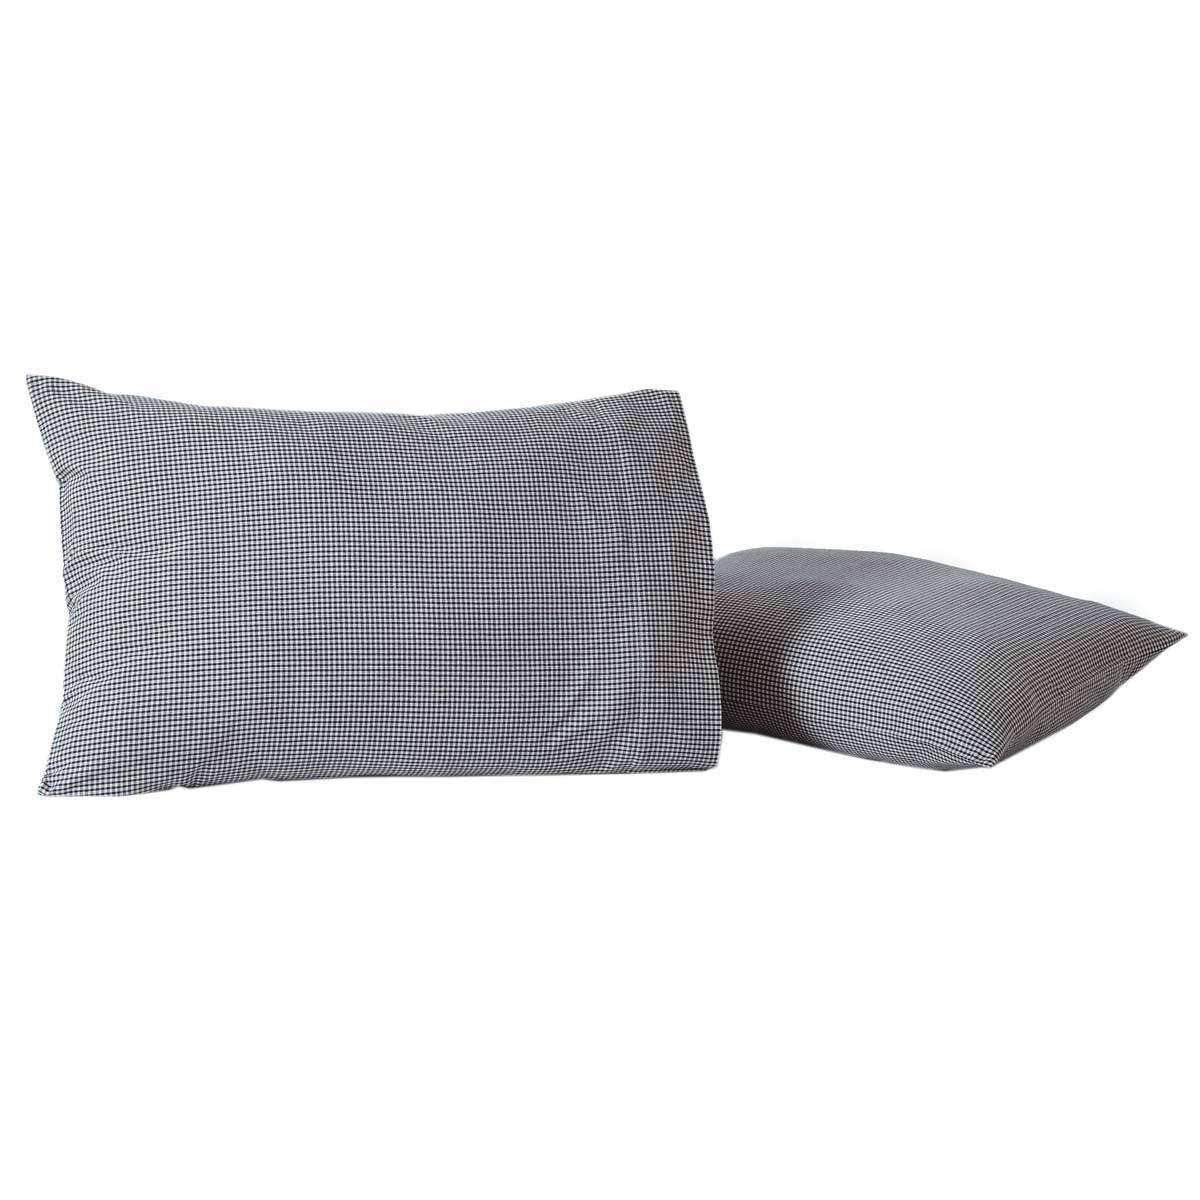 Liberty Stars Standard Pillow Case Set of 2 21x30 VHC Brands - The Fox Decor